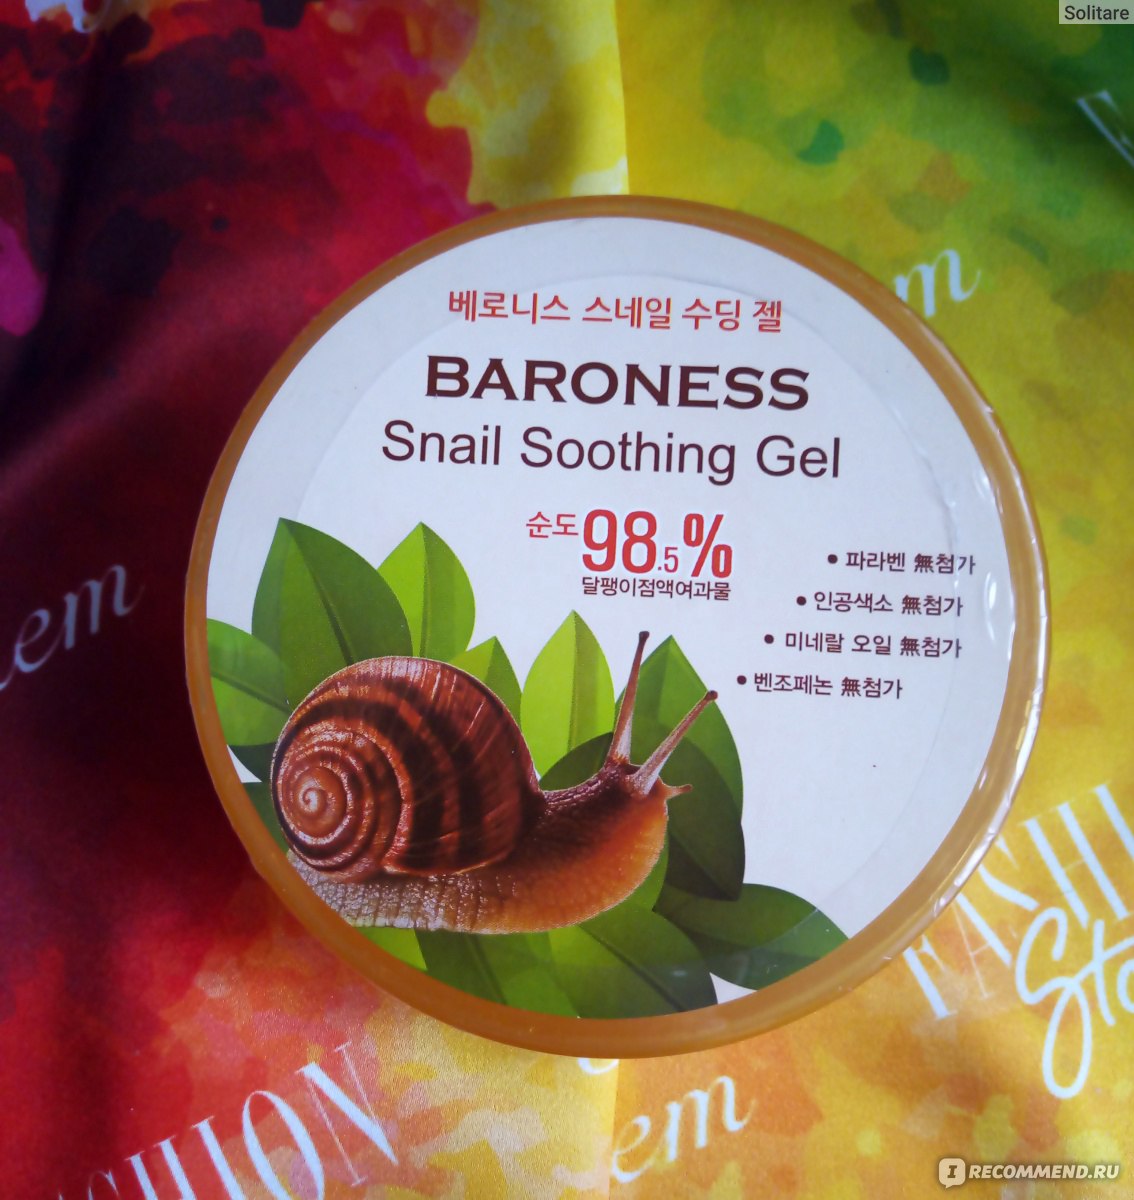 Snail soothing gel. Baroness Snail Soothing Gel. Корейский Snail Soothing Gel. [J:on] гель универсальный улитка face & body Snail Soothing Gel 98%, 200 мл. Snail Gel с экстрактом улитки.